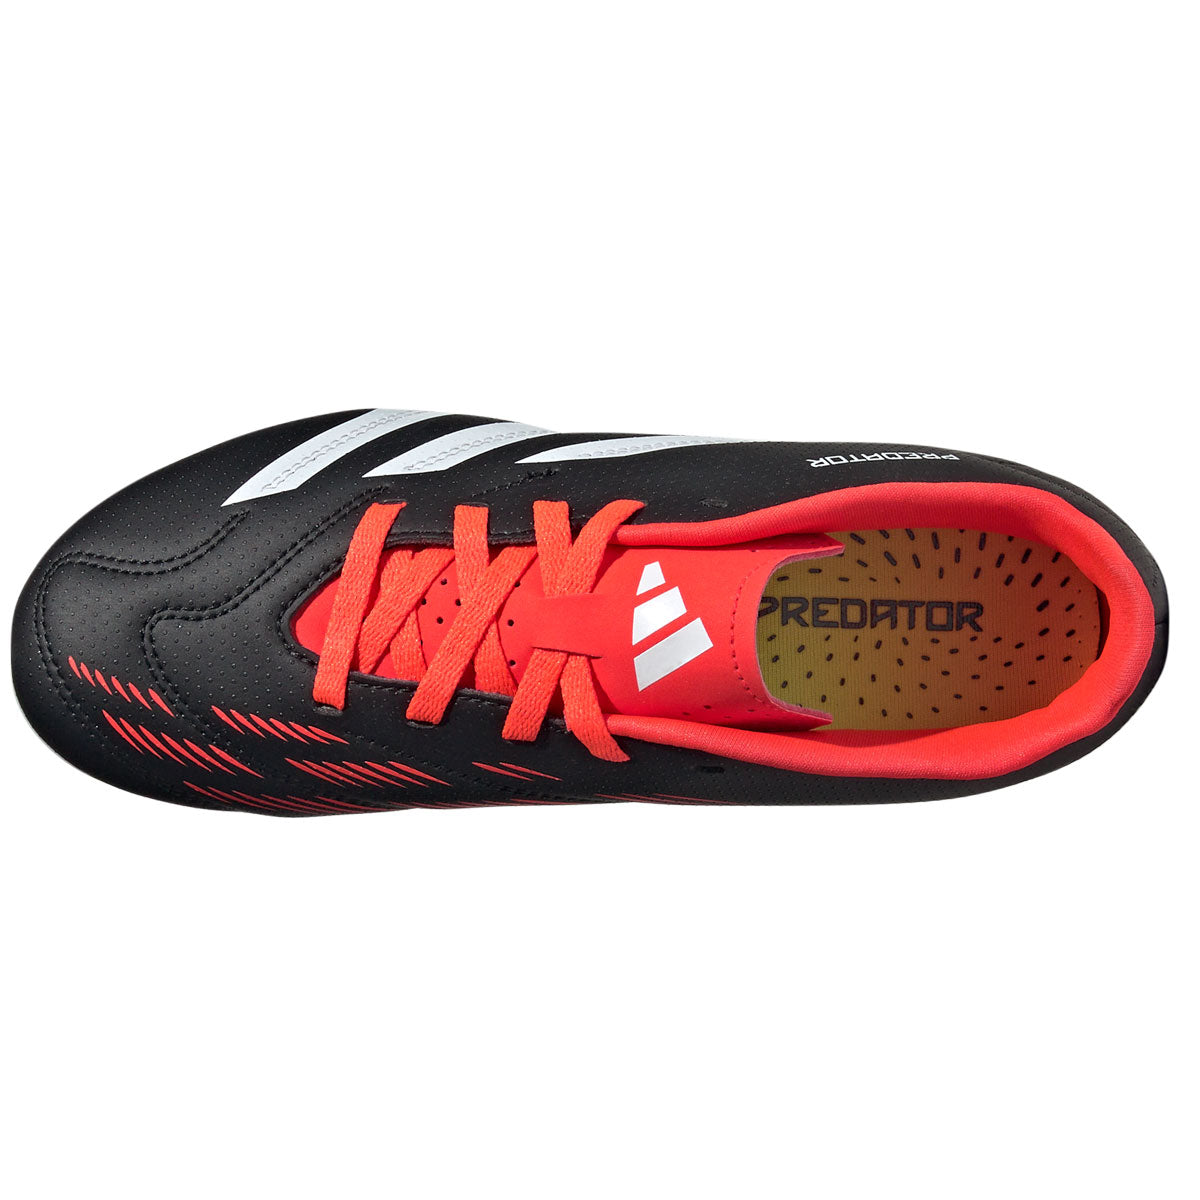 adidas Predator Club FG Football Boots - Youth - Black/White/Solar Red